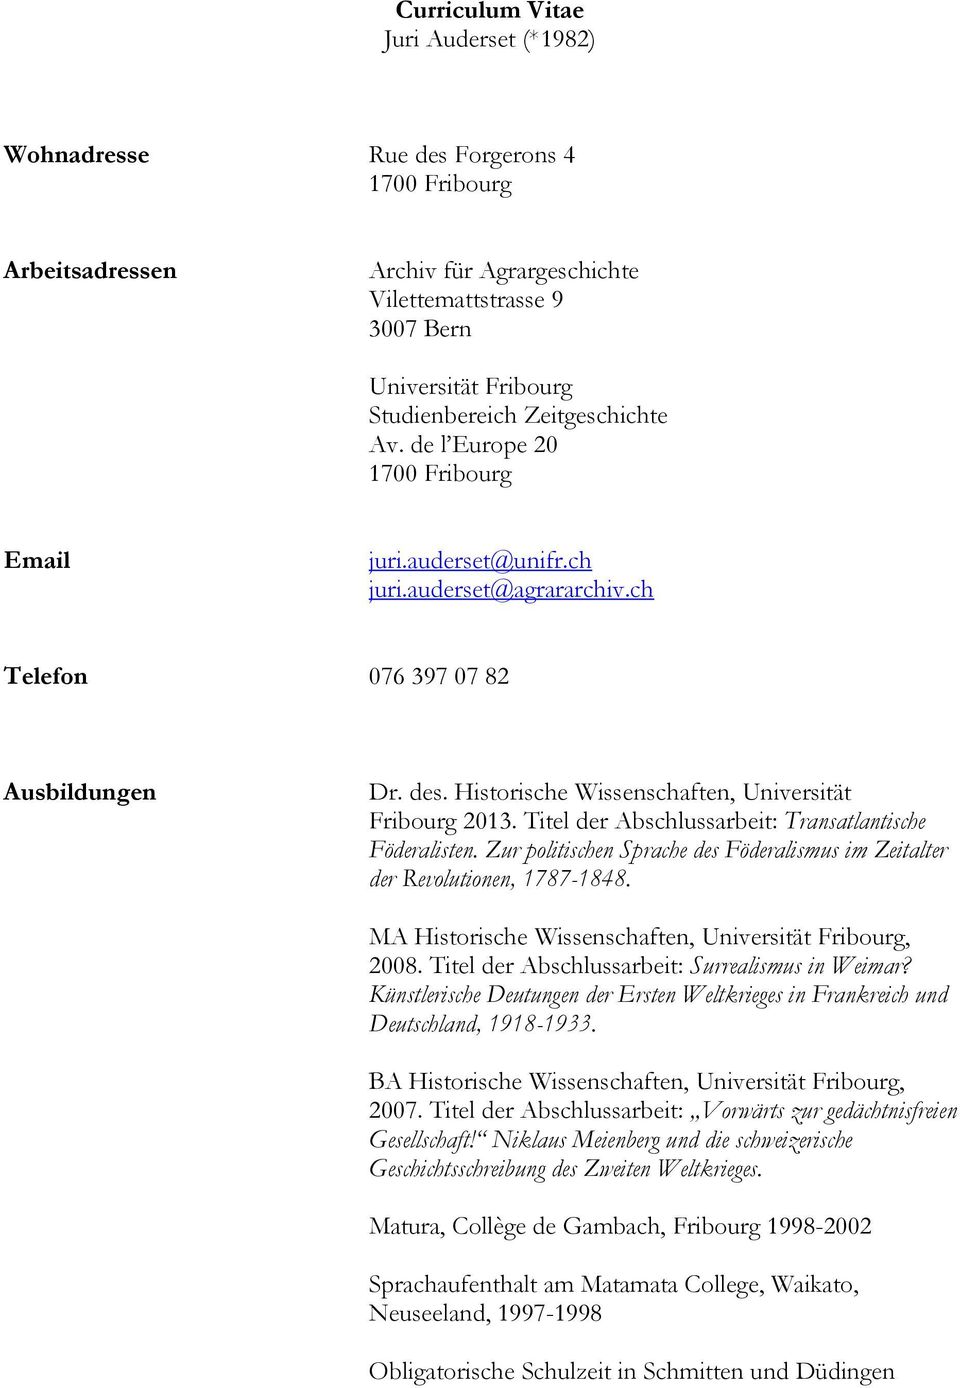 Historische Wissenschaften, Universität Fribourg 2013. Titel der Abschlussarbeit: Transatlantische Föderalisten. Zur politischen Sprache des Föderalismus im Zeitalter der Revolutionen, 1787-1848.